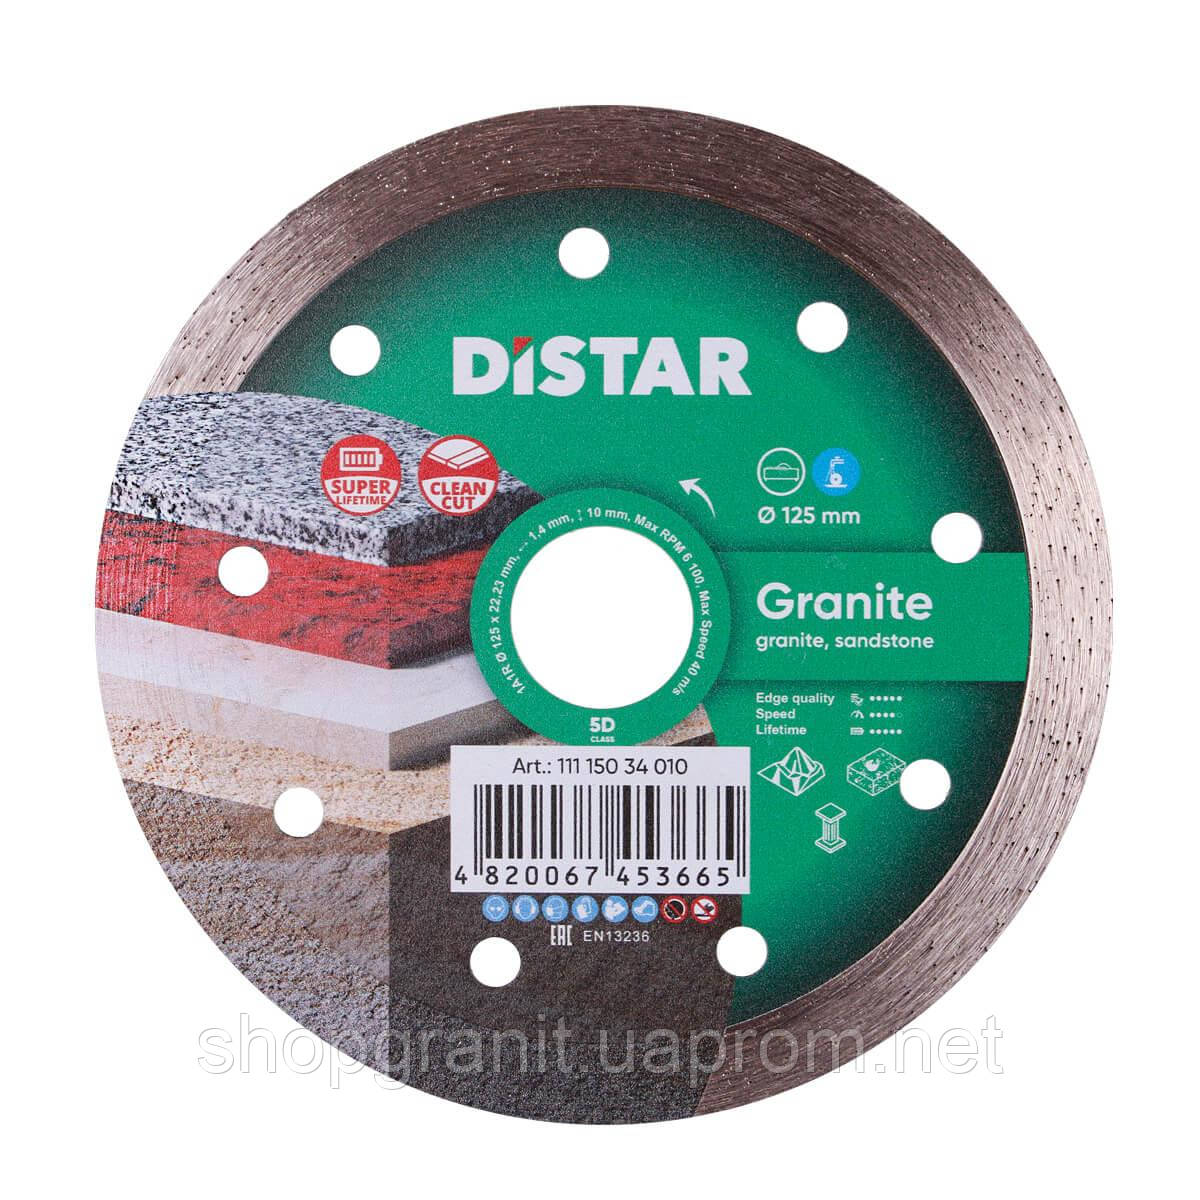 Алмазний вiдрiзний круг, диск DiStar 1A1R 125x1,4x10x22,23 Granite -11115034010- Мармур, Граніт